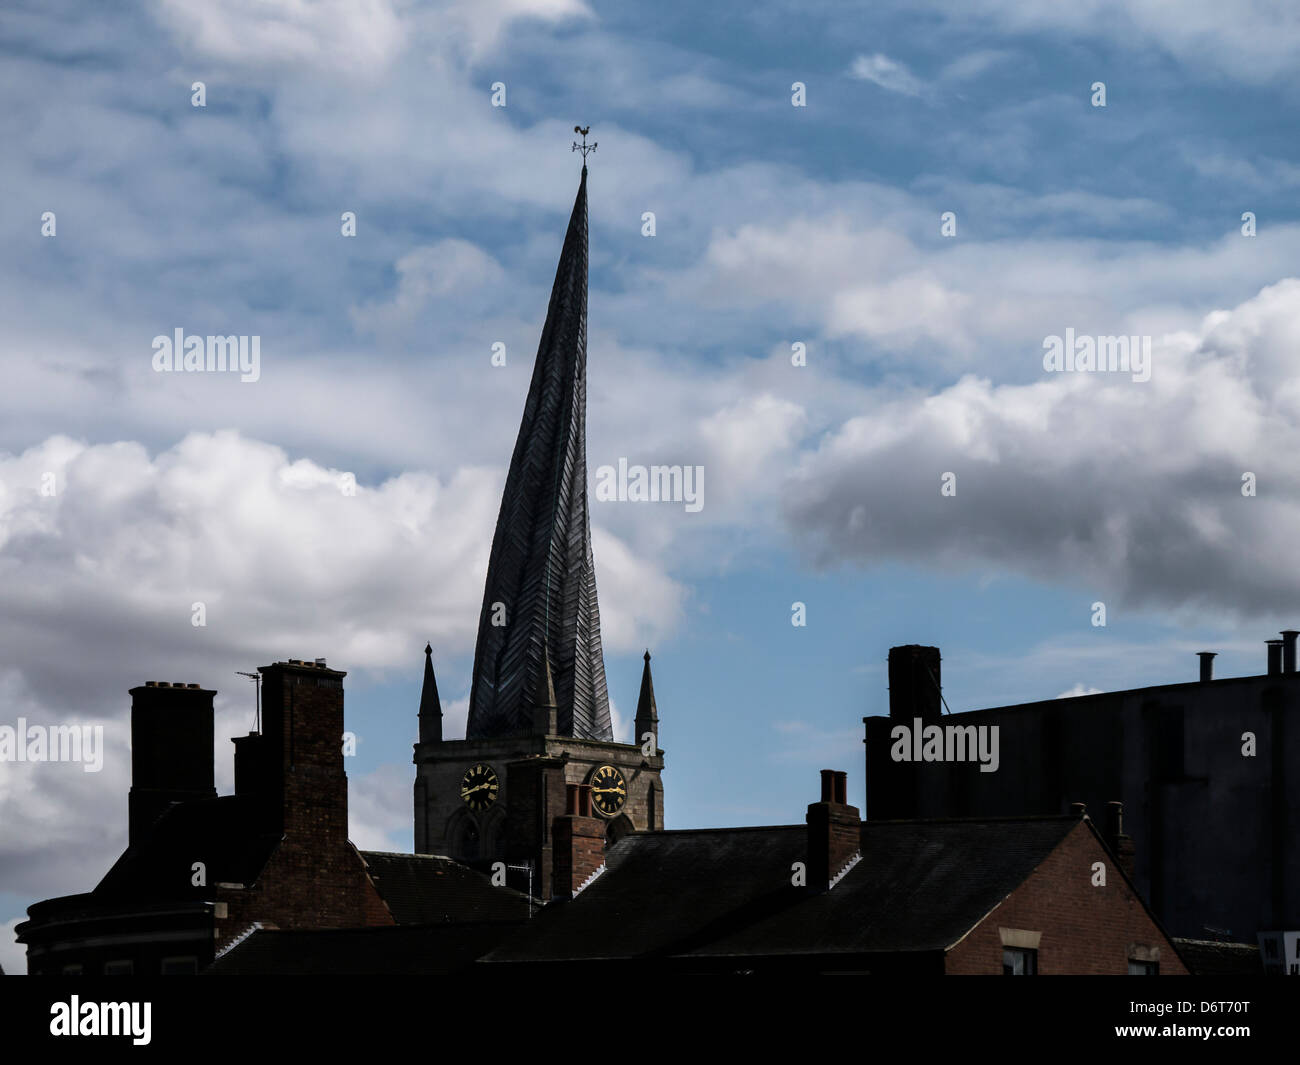 CHESTERFIELD, DERBYSHIRE, Großbritannien - 18. APRIL 2013: Chesterfield Cathedral mit seinem krummen Spire in Silhouette Stockfoto